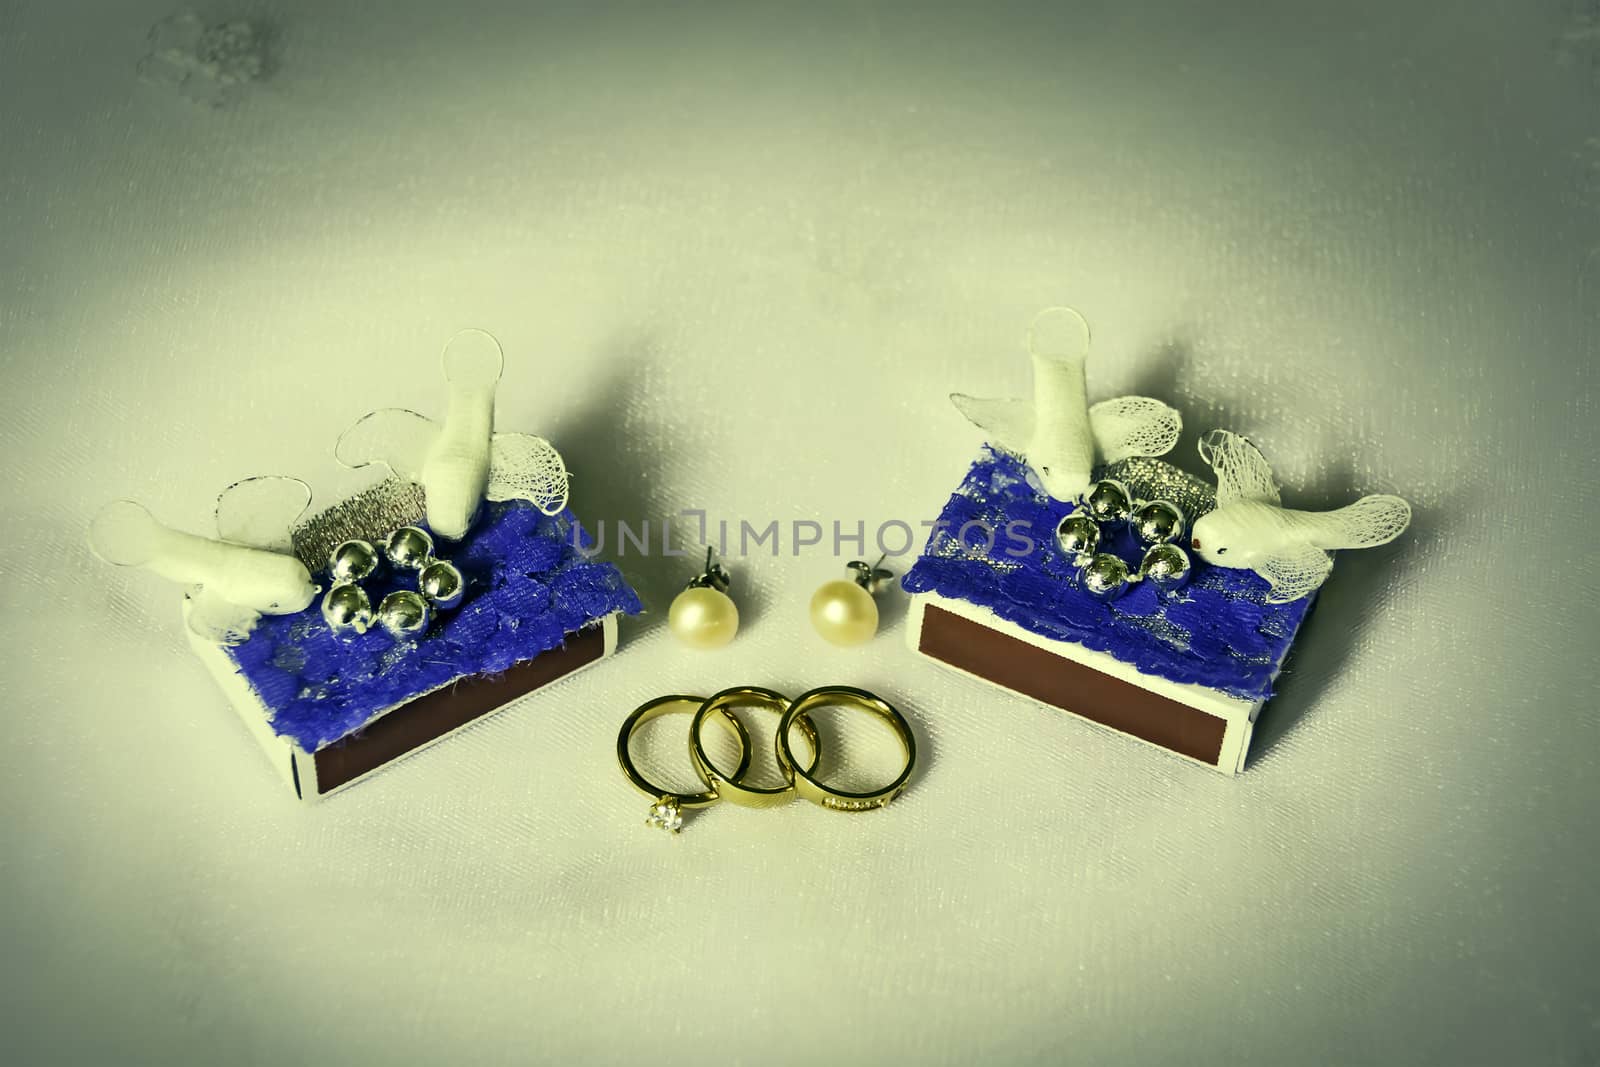 Various bride groom wedding accessories on of of bride's veil